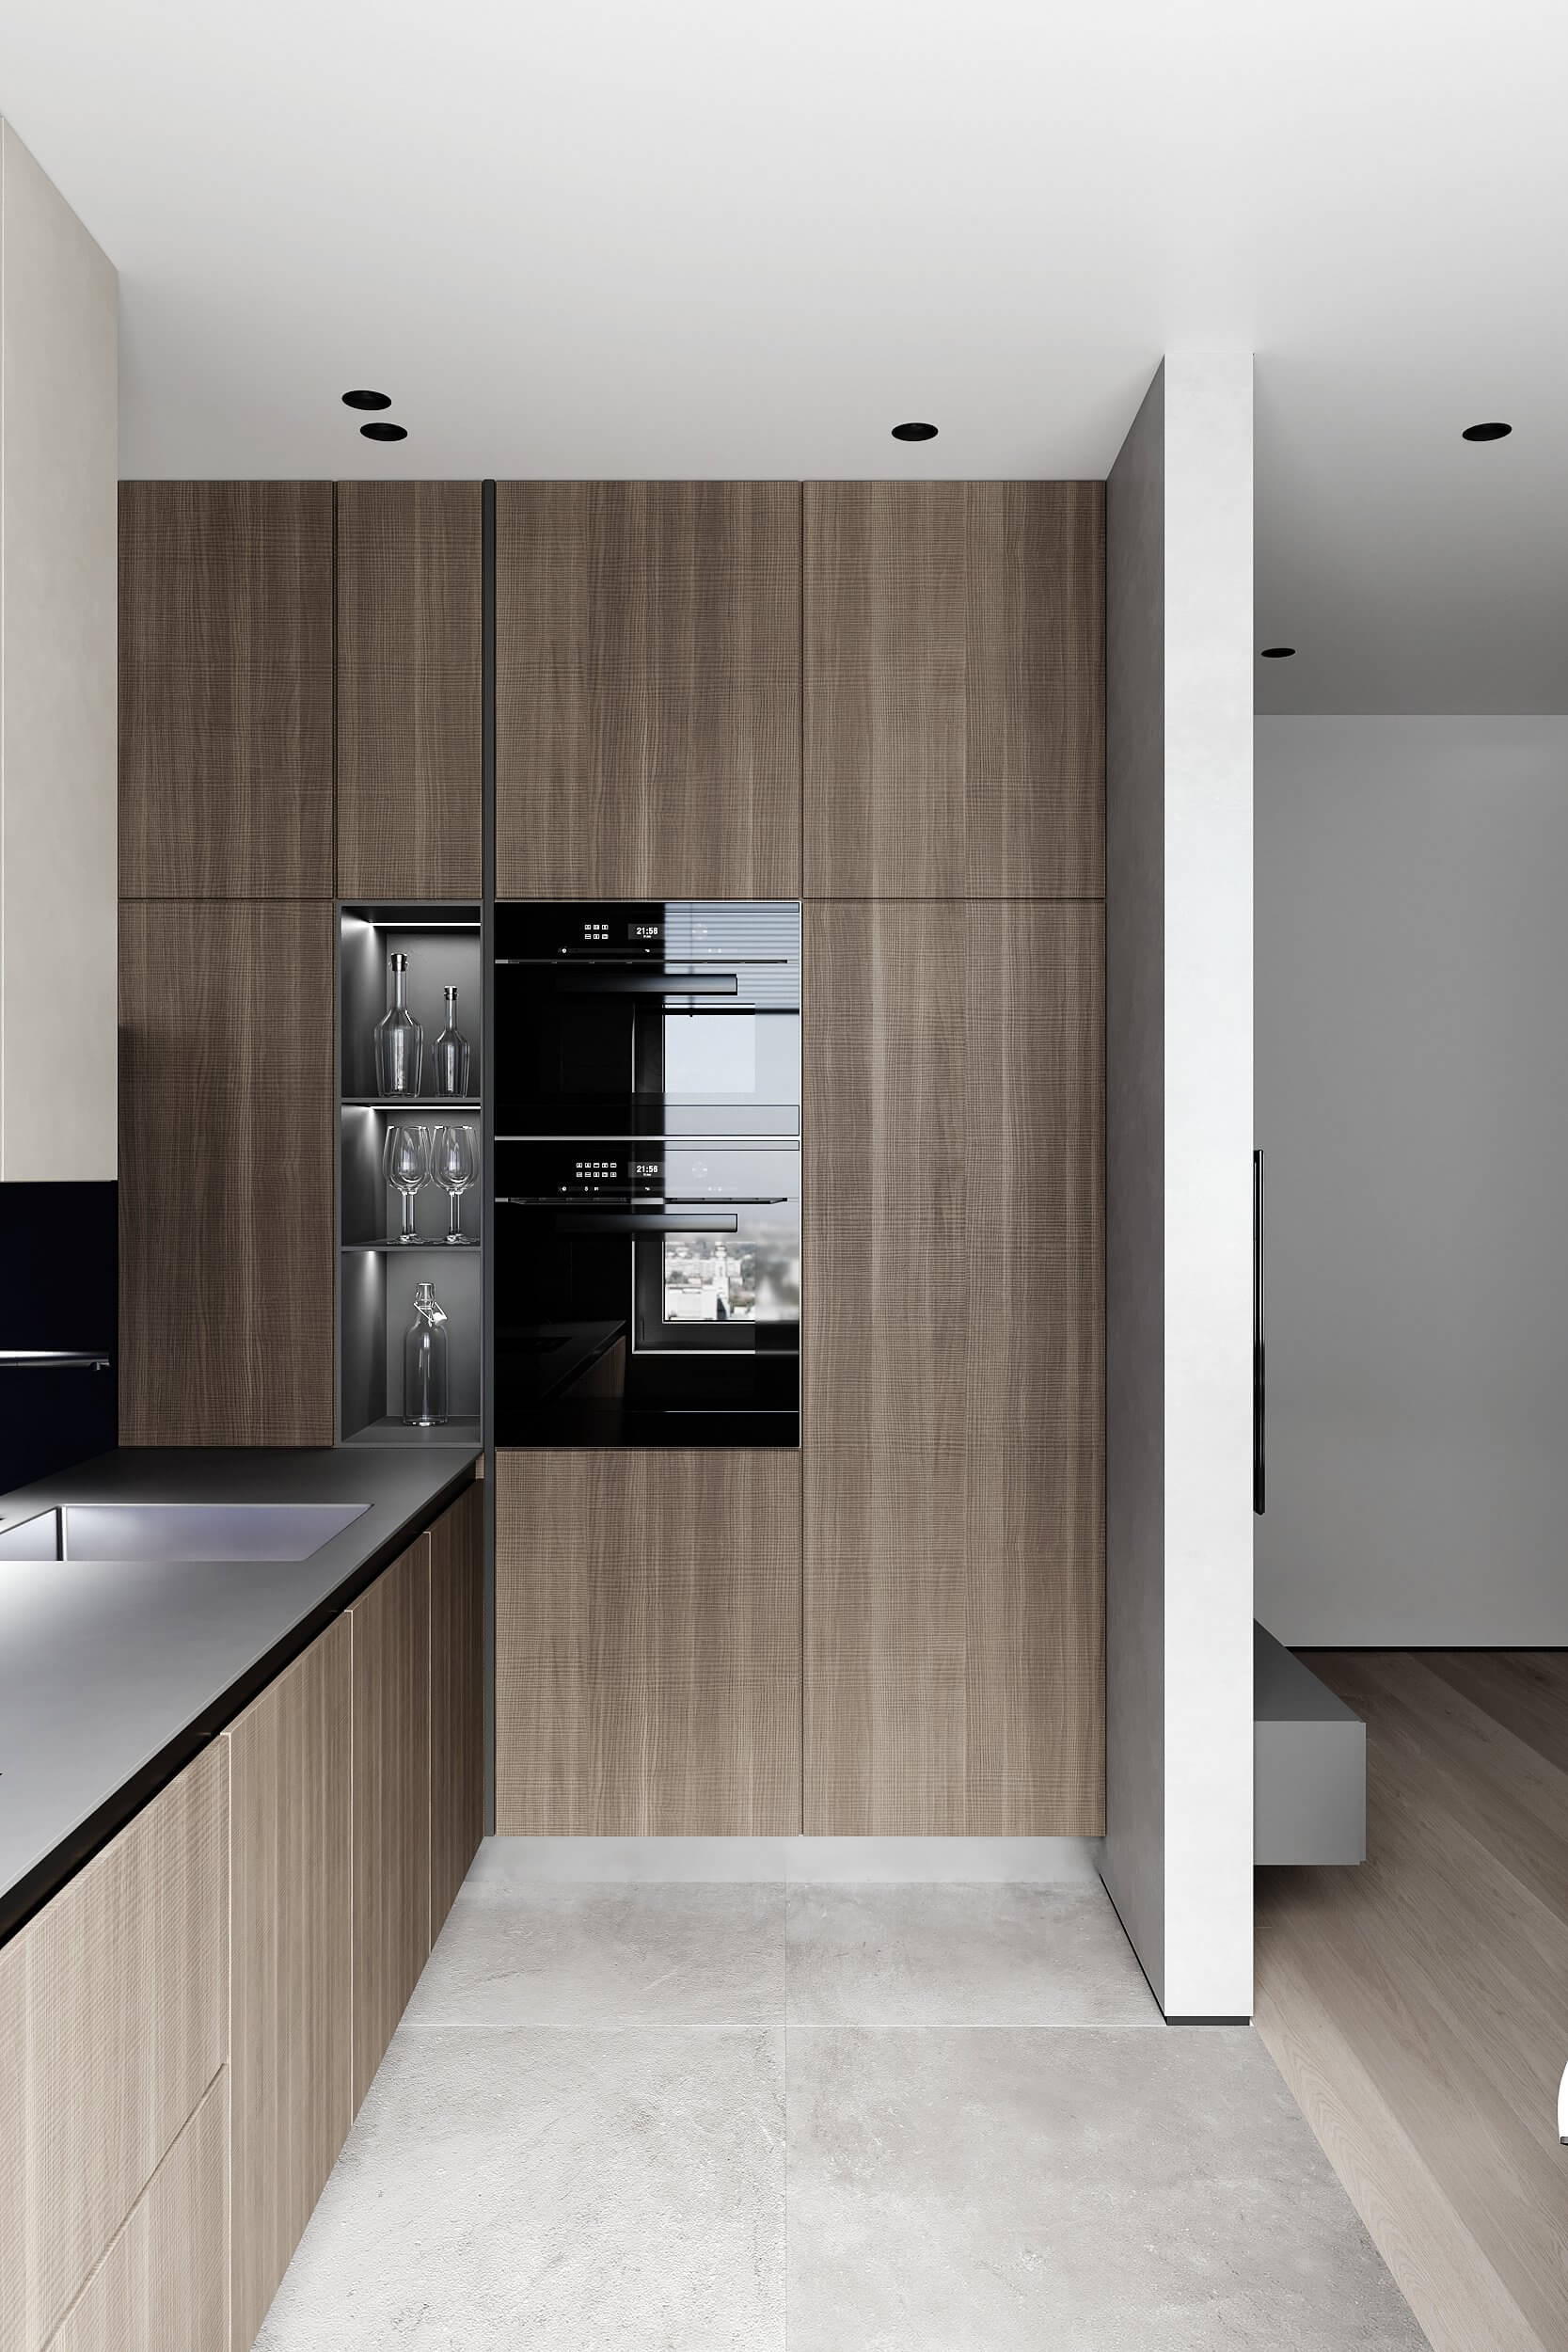 KHamilon apartment kitchen - cgi visualization